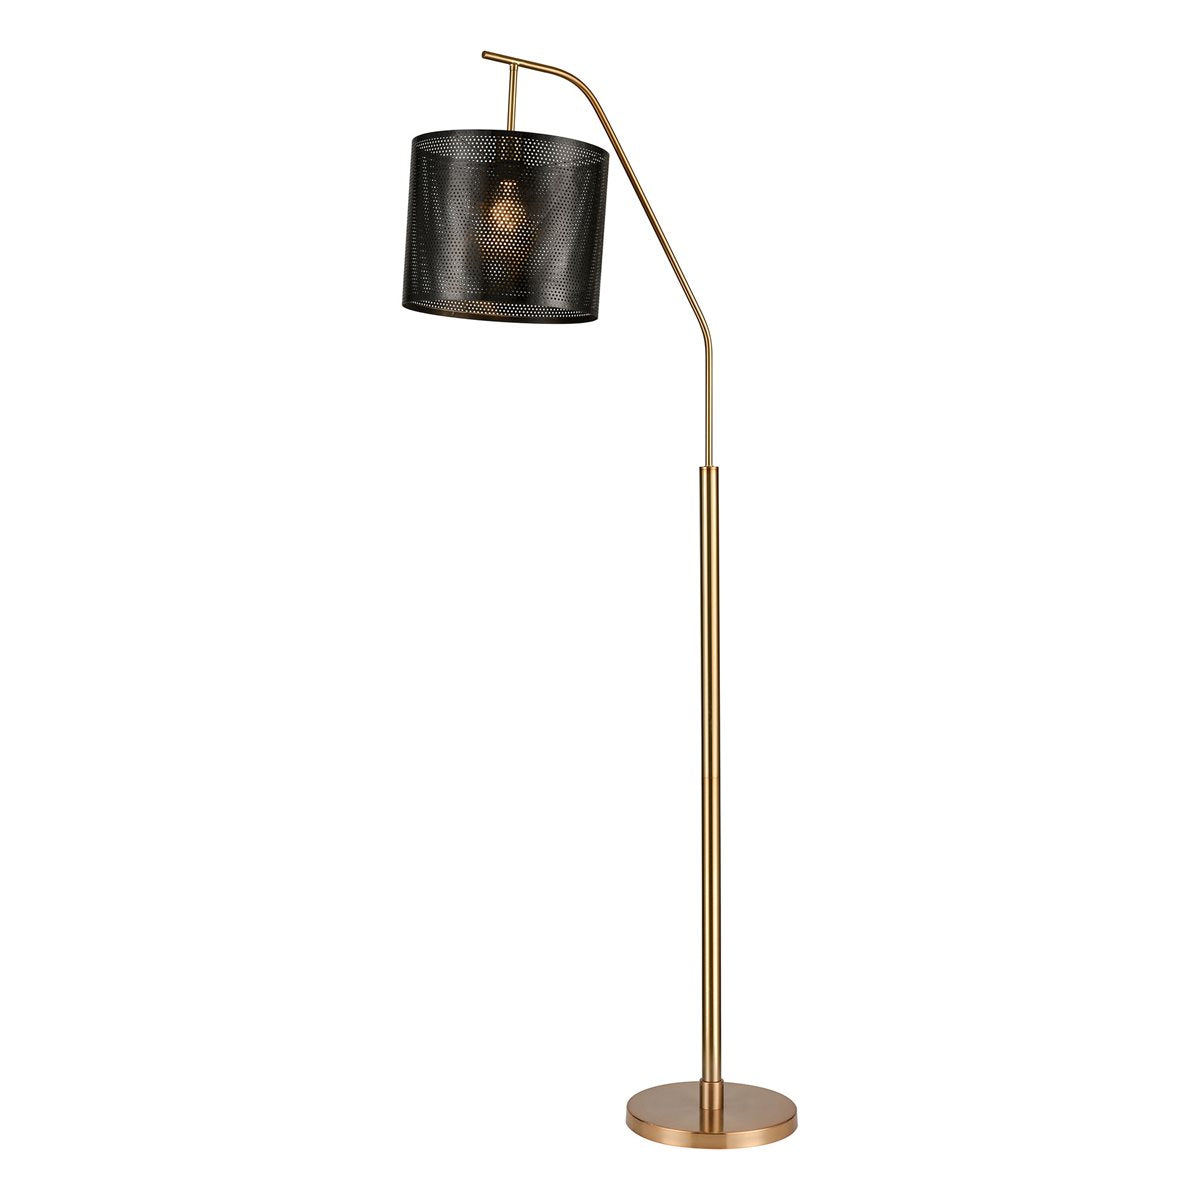 Stein World Decker Floor Lamp 77194